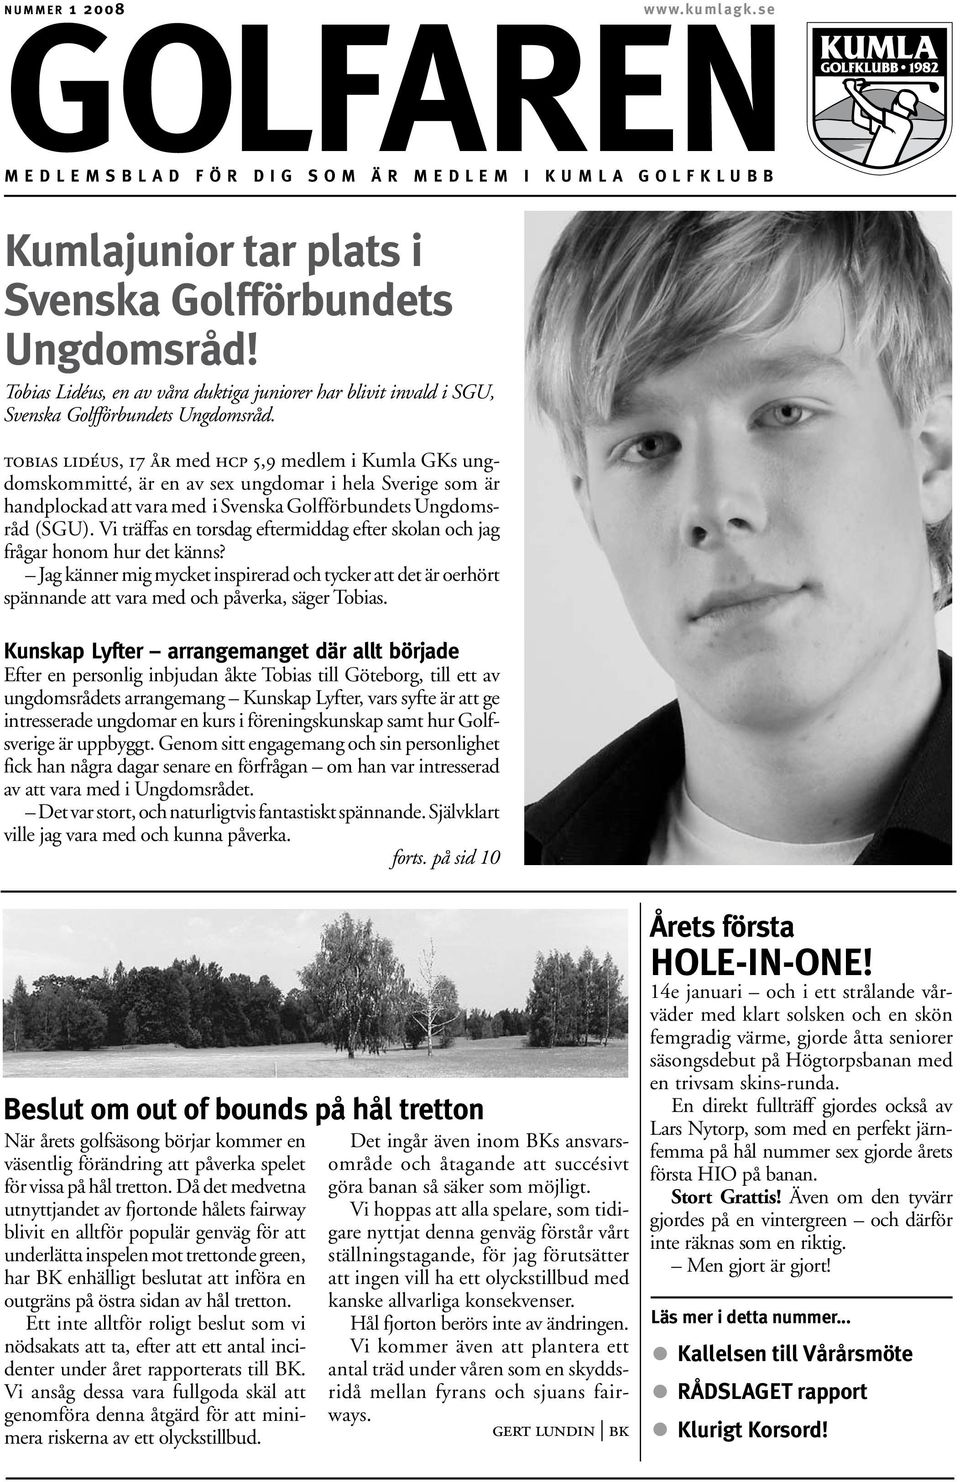 tobias lidéus, 17 år med hcp 5,9 medlem i Kumla GKs ungdomskommitté, är en av sex ungdomar i hela Sverige som är handplockad att vara med i Svenska Golfförbundets Ungdomsråd (SGU).